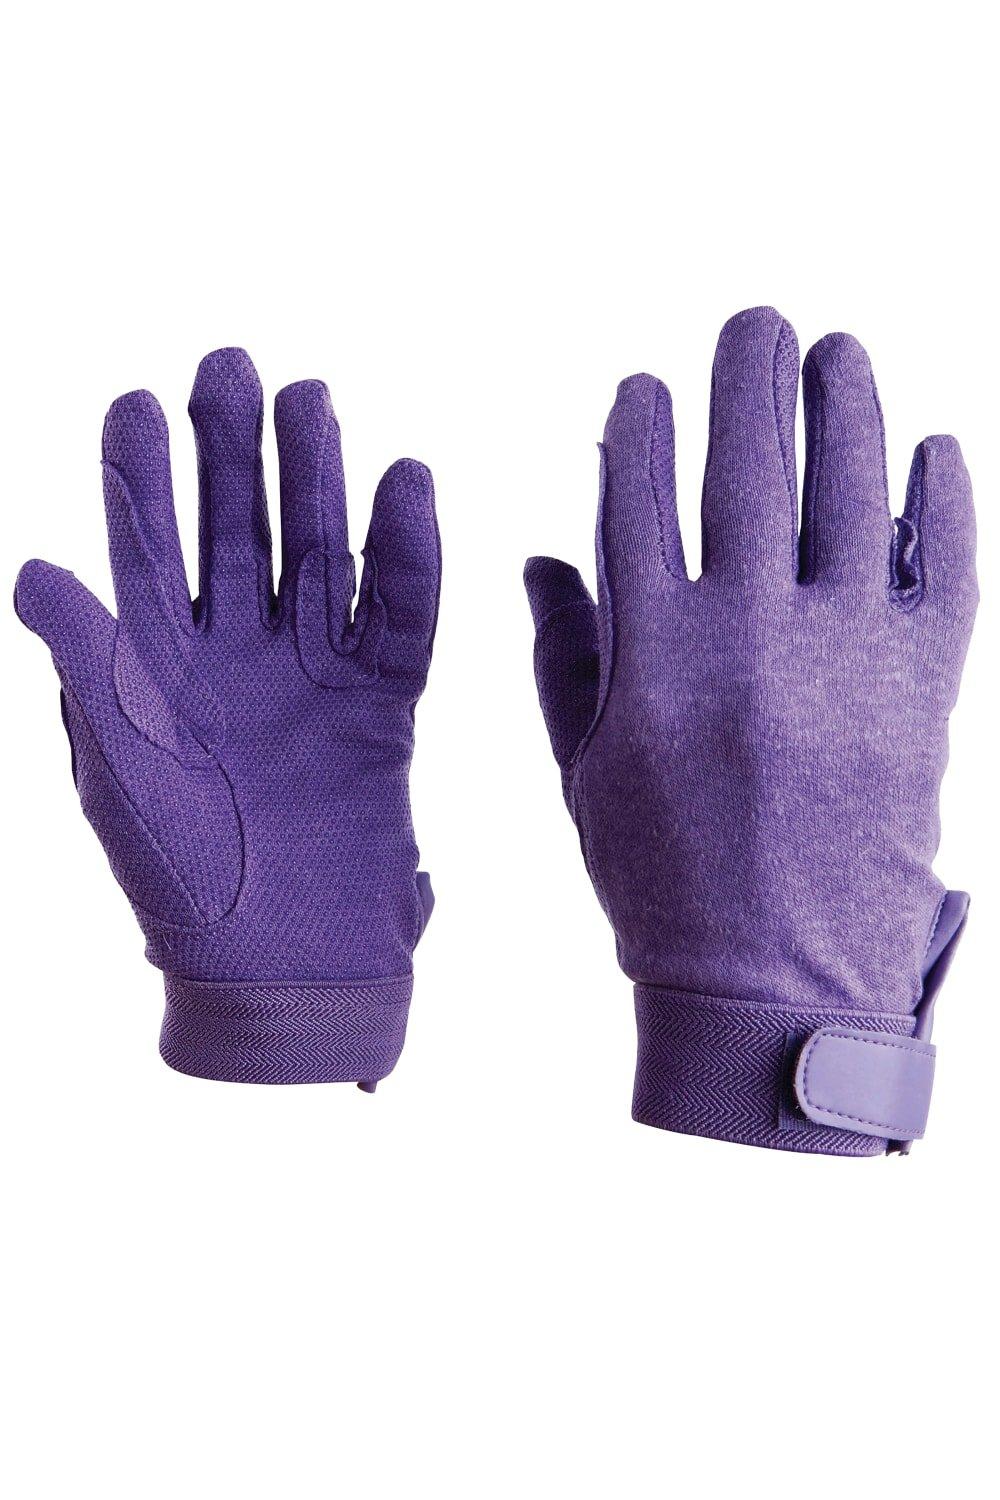 Перчатки для трековой езды Dublin, фиолетовый перчатки рабочие утепленные усиленные berta хлопковые размер xl